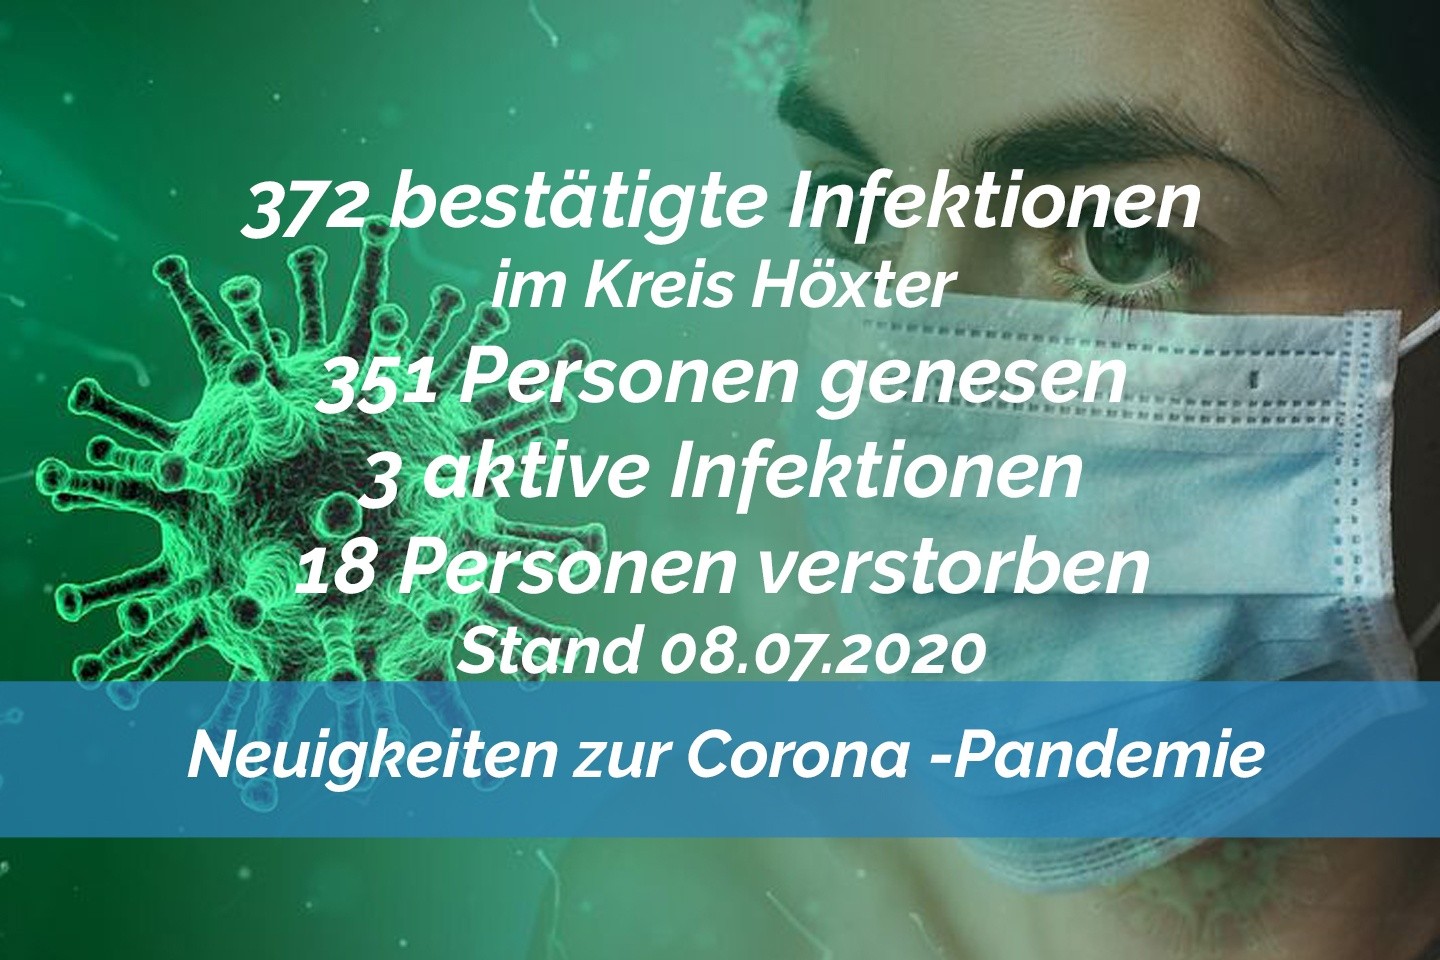 Update vom 08. Juli: Immer noch 372 bestätigte Infektionen mit dem neuen Coronavirus im Kreis Höxter